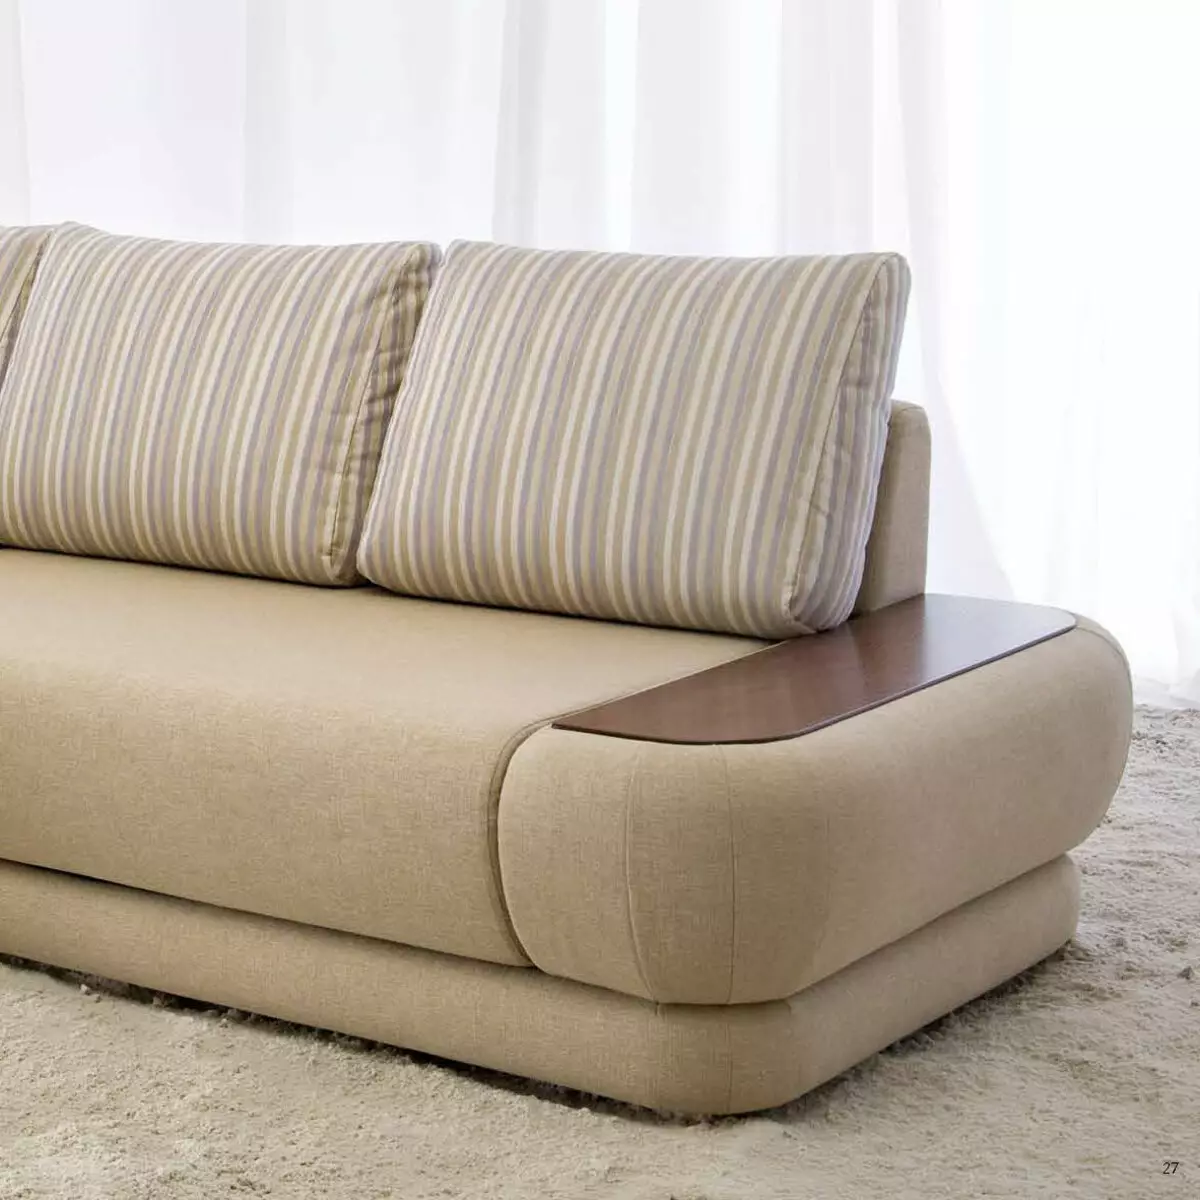 Sofa Pushe: sudut, lurus dan modular, tempat tidur sofa dan model lain dari pabrik. Ulasan pelanggan 9127_6